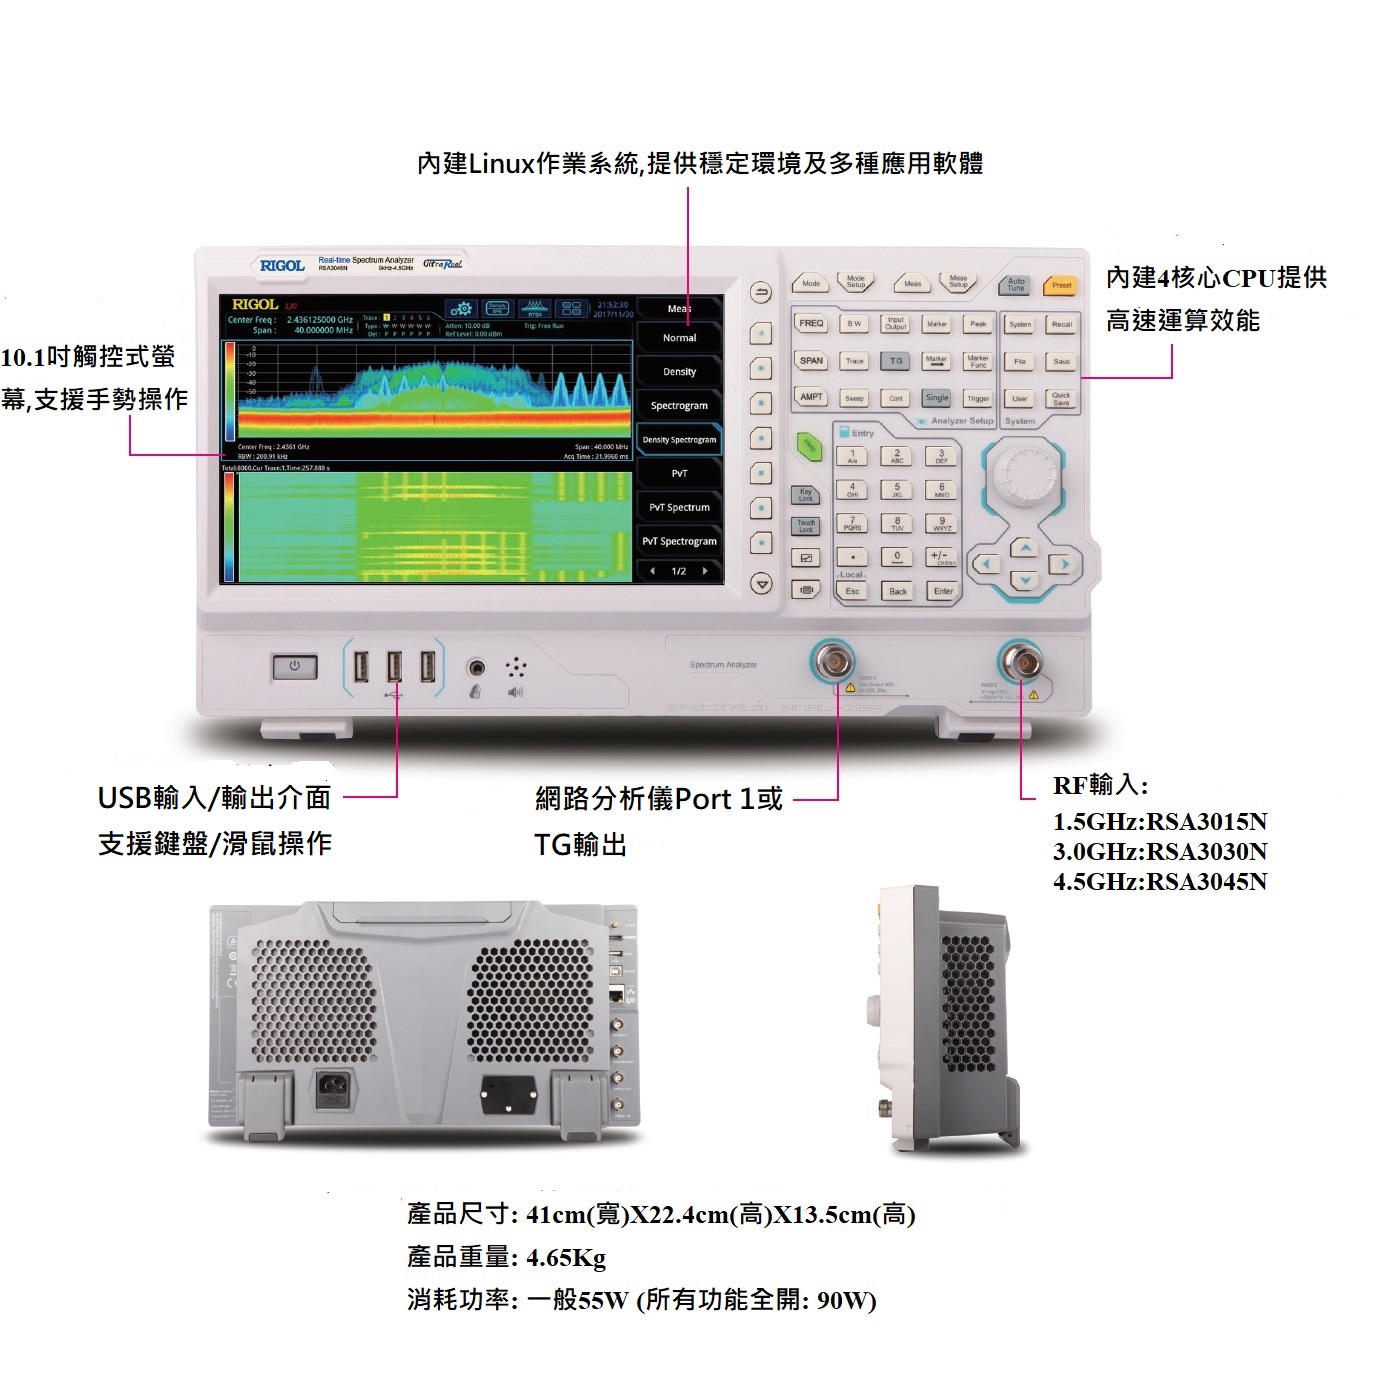 RSA3000N系列向量網路分析儀外觀介紹